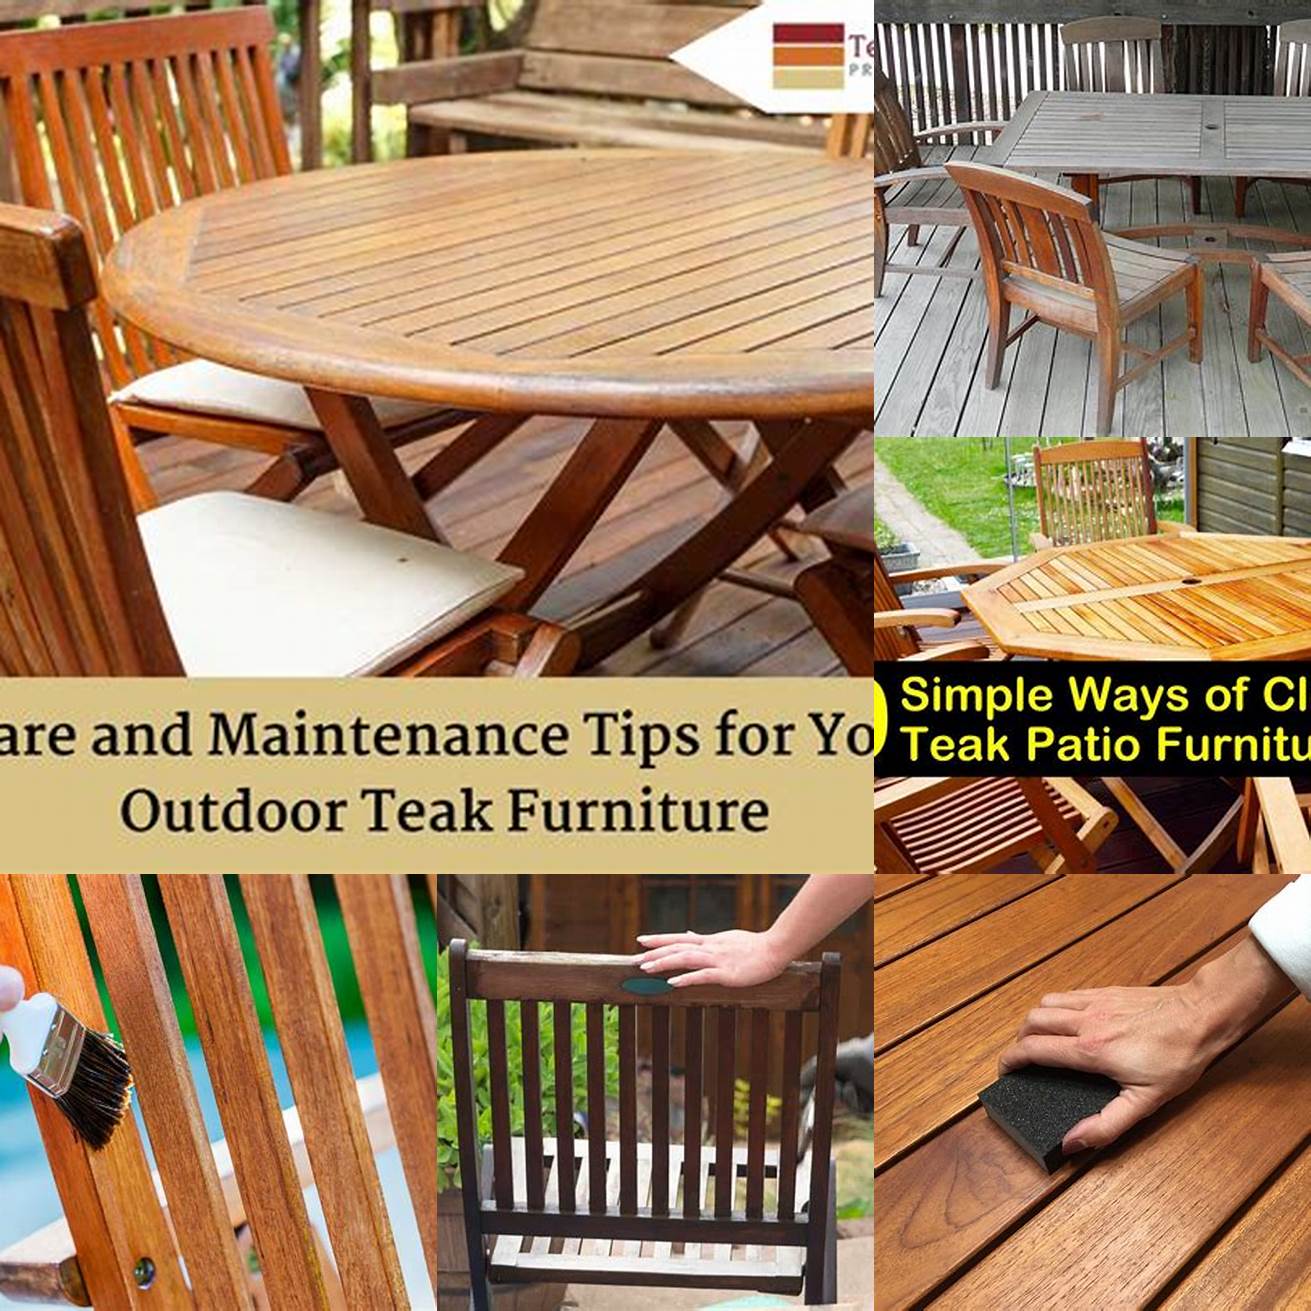 Teak furniture maintenance tips